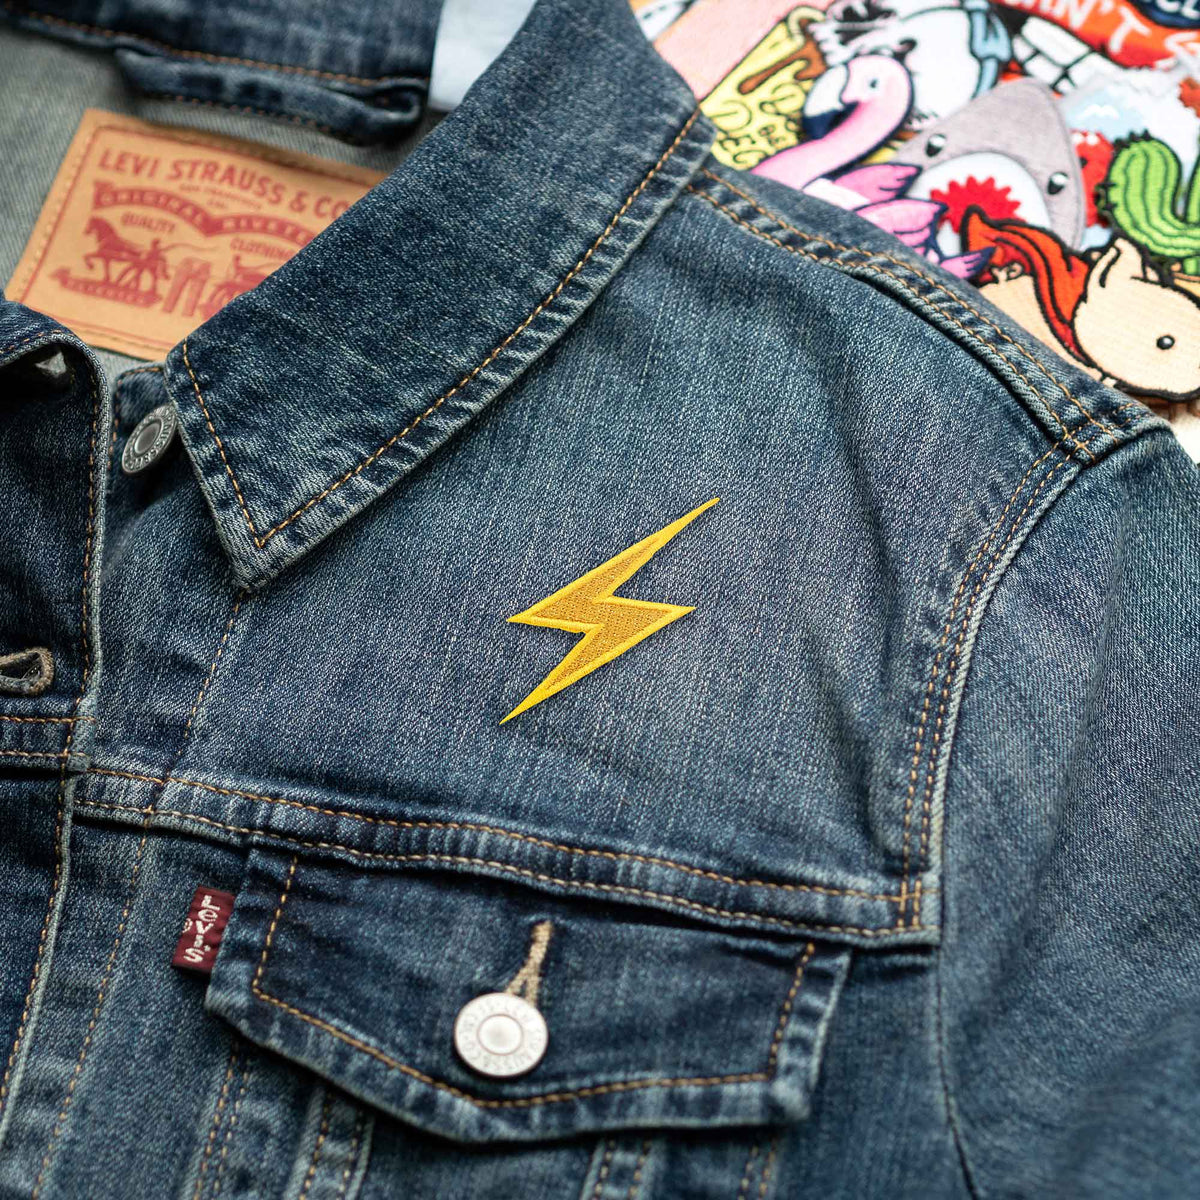 High Voltage Sign Metallic Lightning Bolt Emoji Embroidered Patch